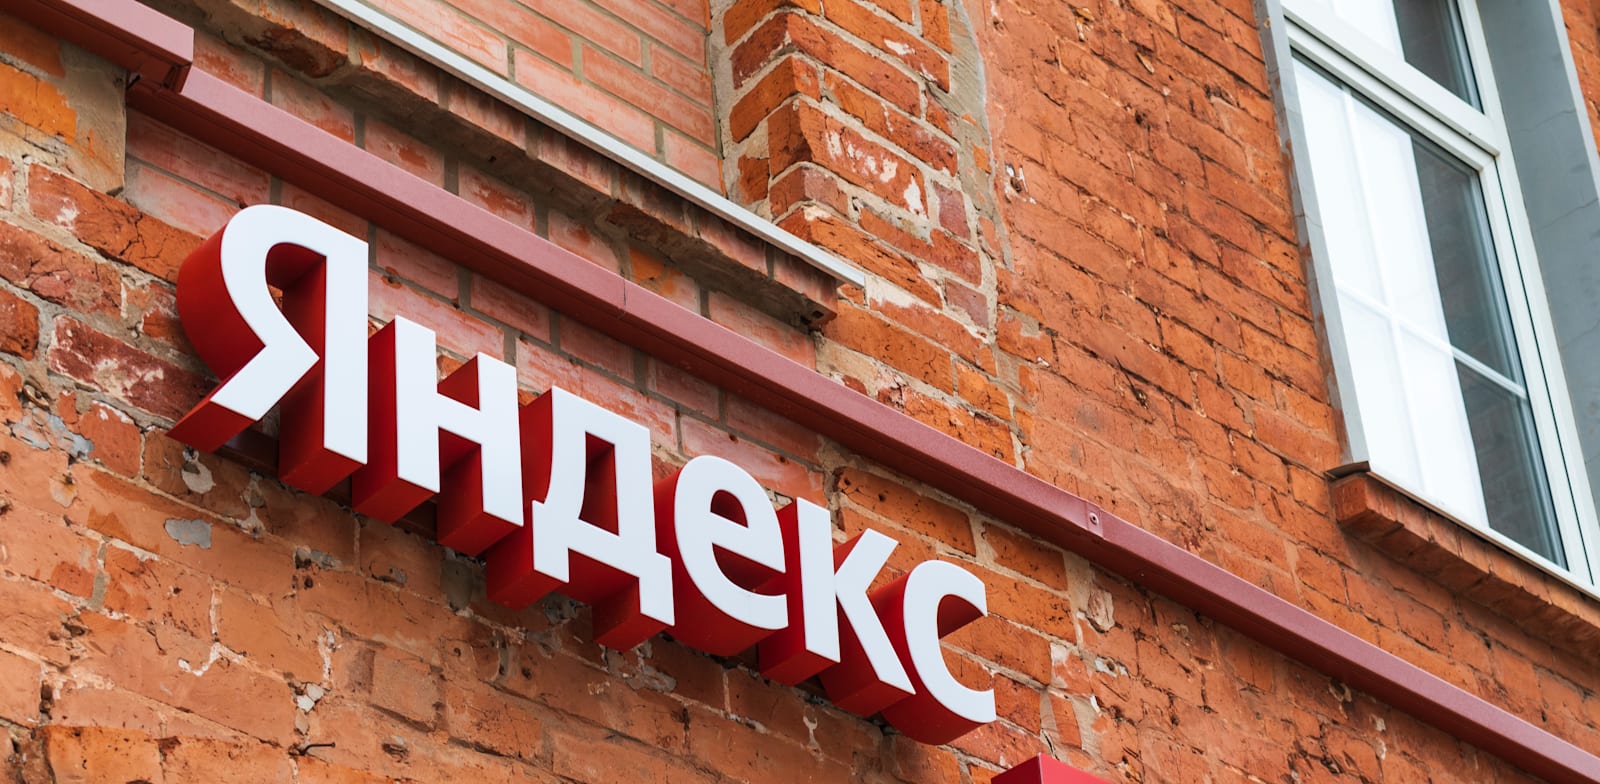 משרדי יאנדקס במוסקבה / צילום: Shutterstock, evgris